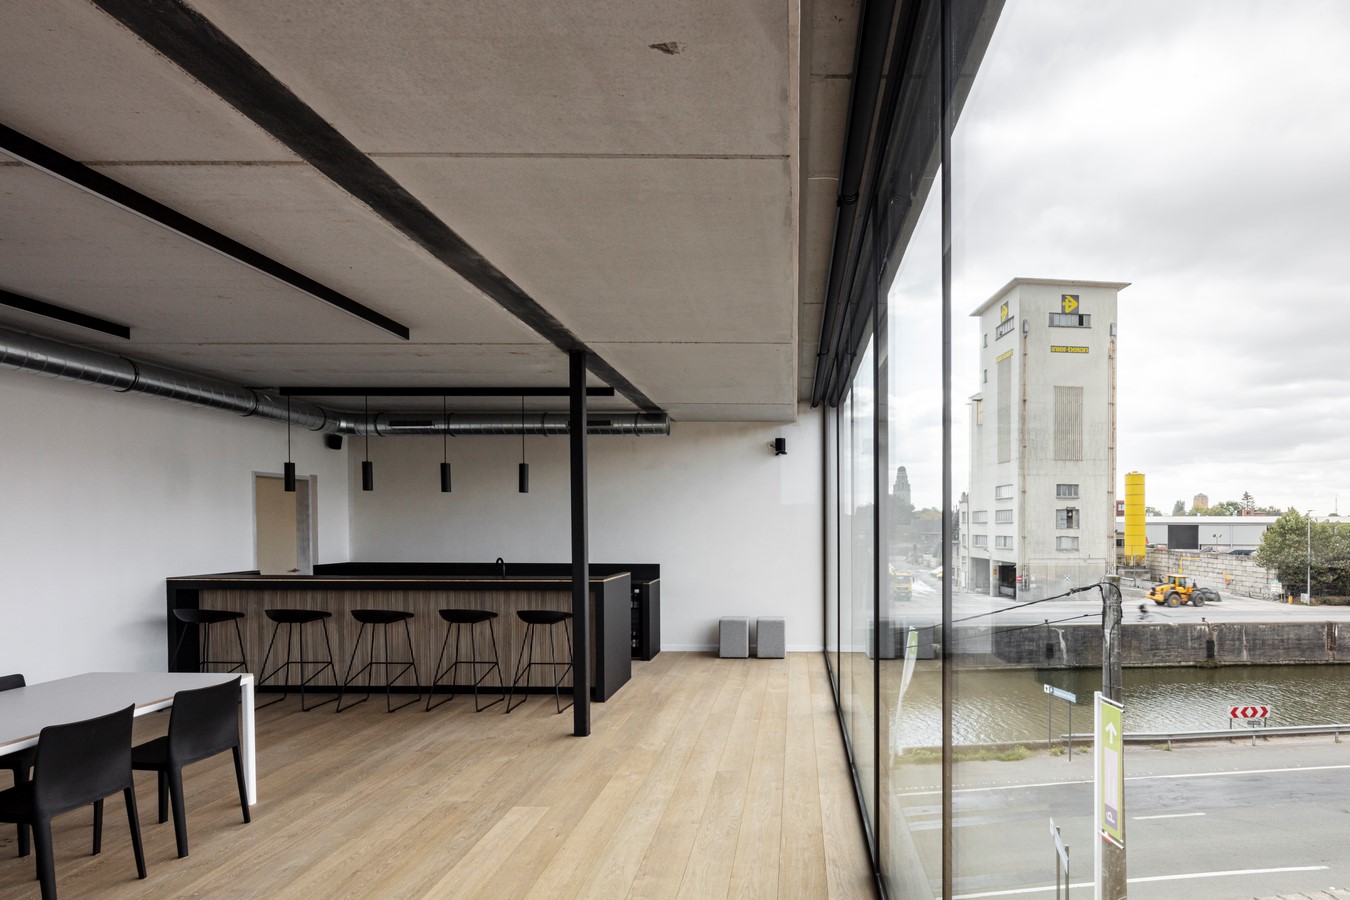 Akurad law office by Declerck – Daels, Architecten - Sheet8